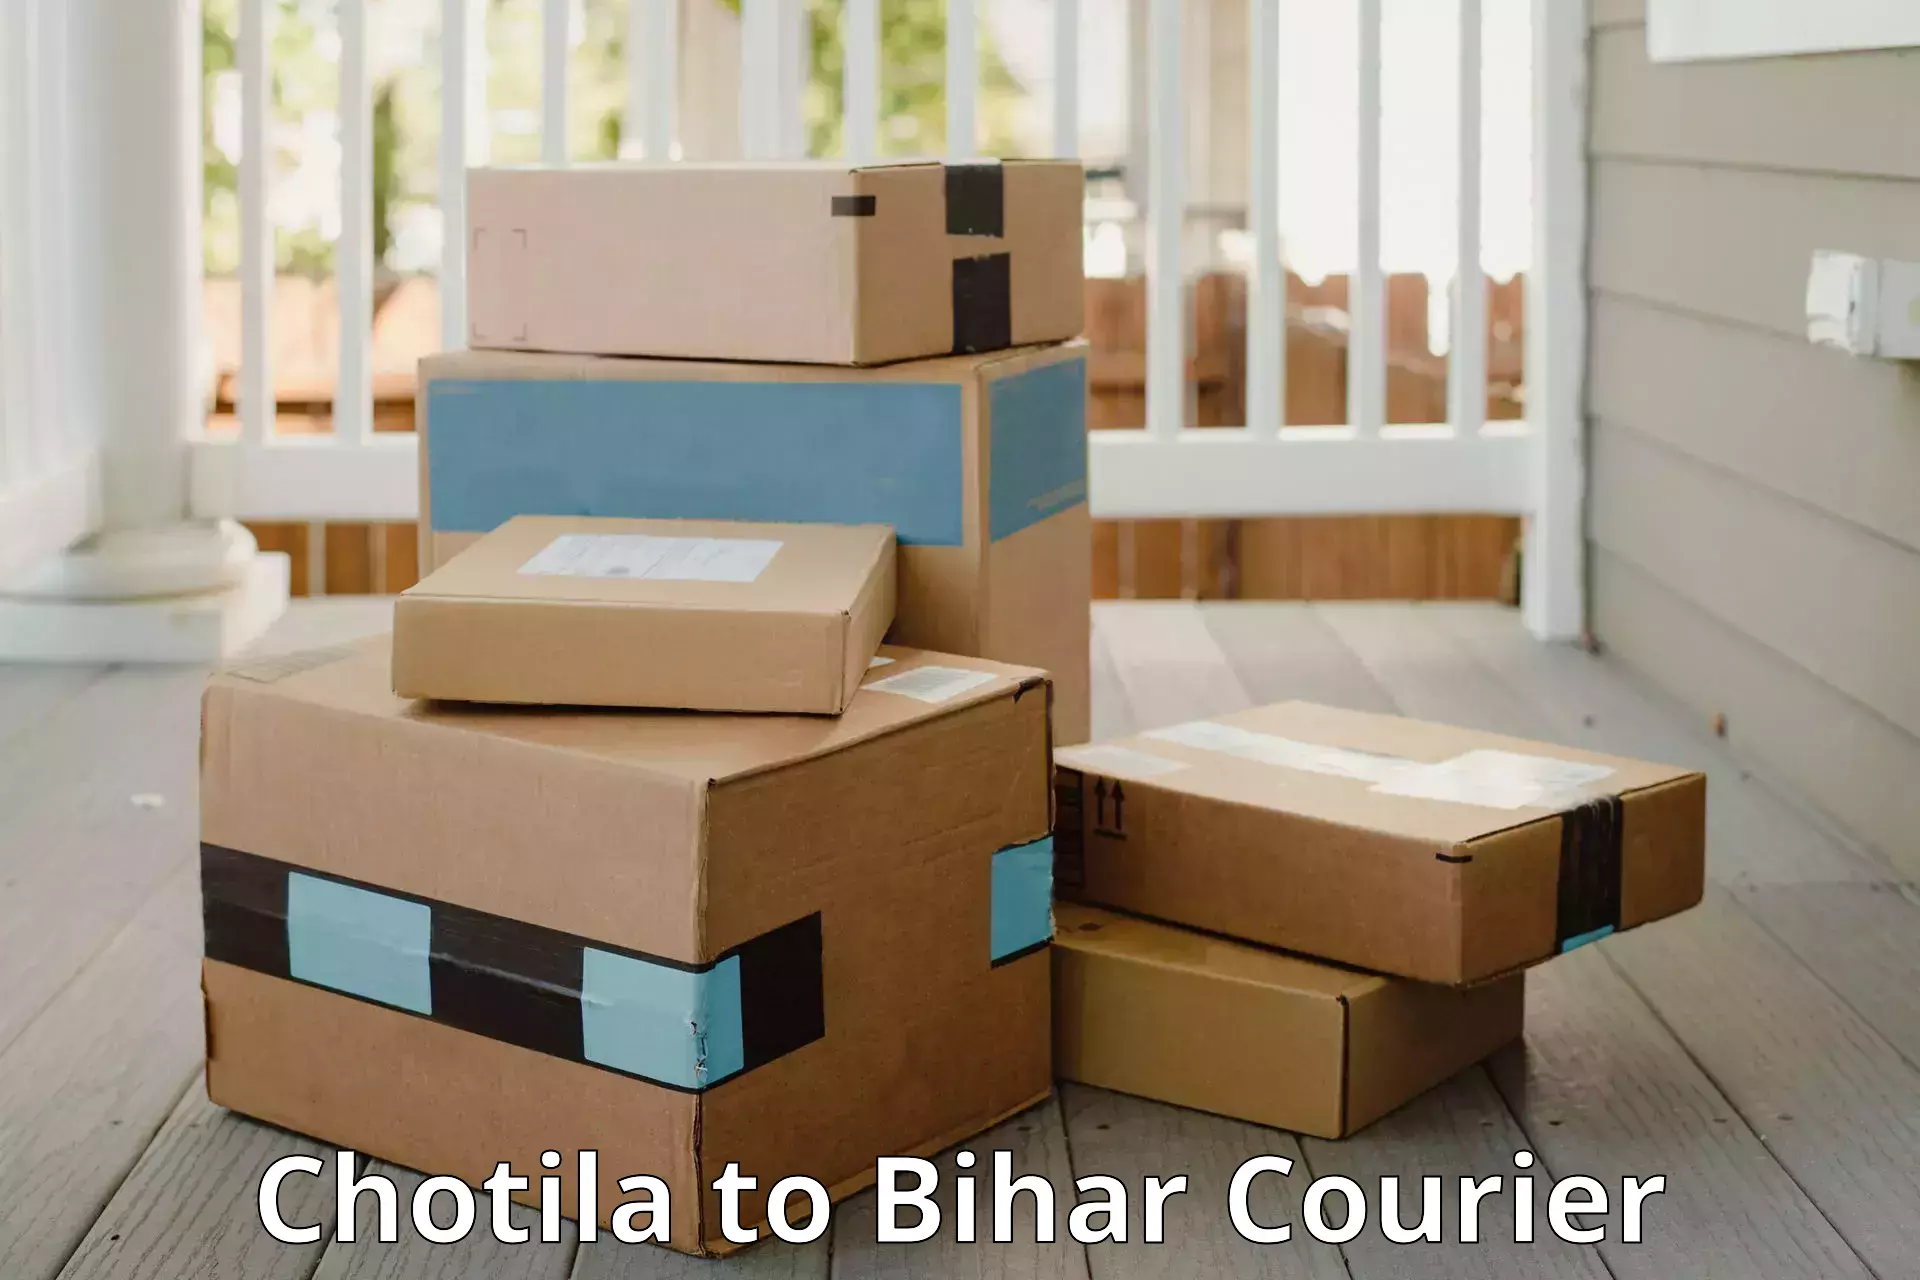 Luggage shipment specialists Chotila to Bihar